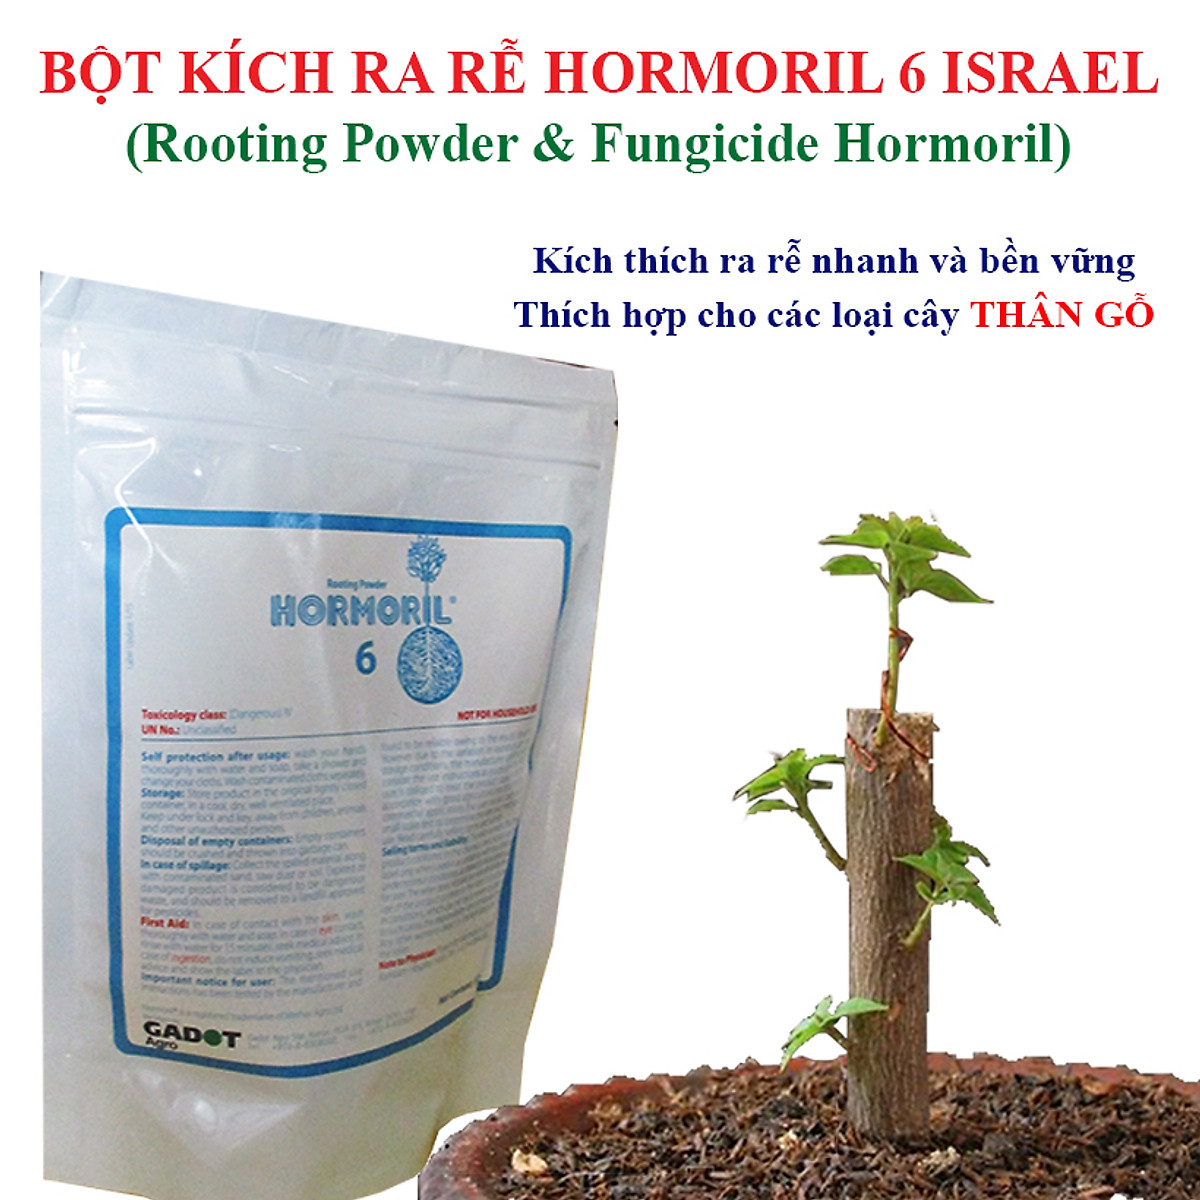 Bột Kích Ra Rễ Israel cho cây Thân Gỗ Hormoril 6, kích thích ra rễ nhanh, sử dụng giâm, chiết các loại cây thân Gỗ